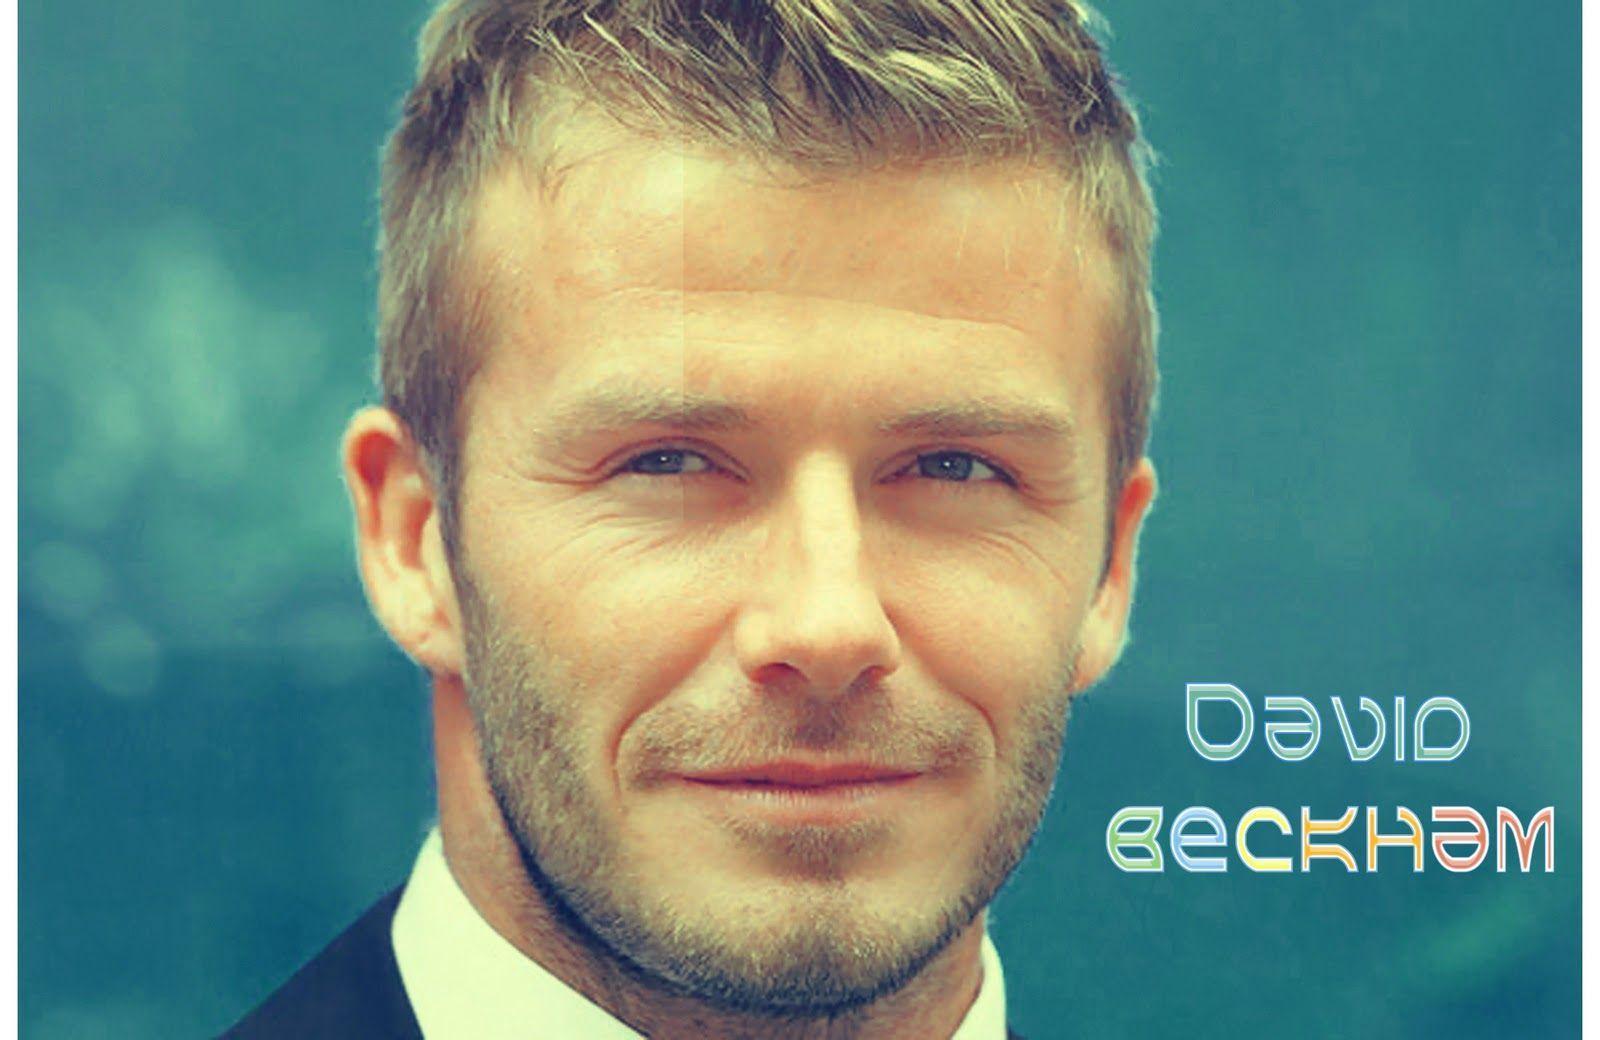 David Beckham 2014. High Definition Wallpaper, High Definition